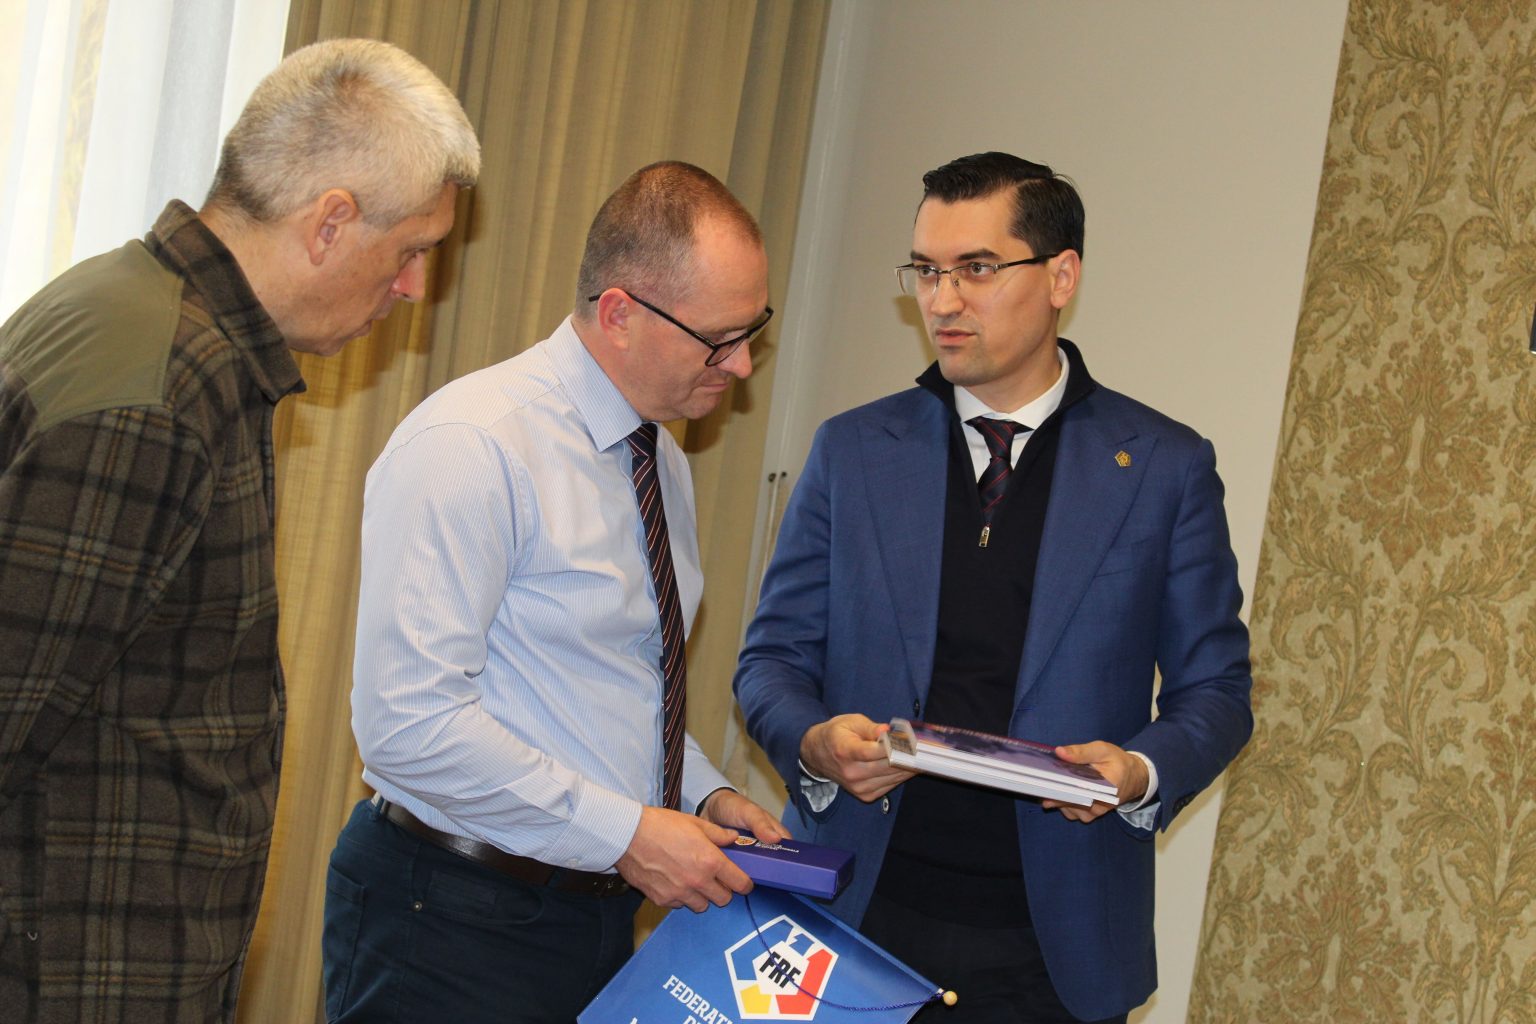 Csíkszeredában járt a román labdarúgó szövetség elnöke: Elégedett volt a látottakkal Răzvan Burleanu